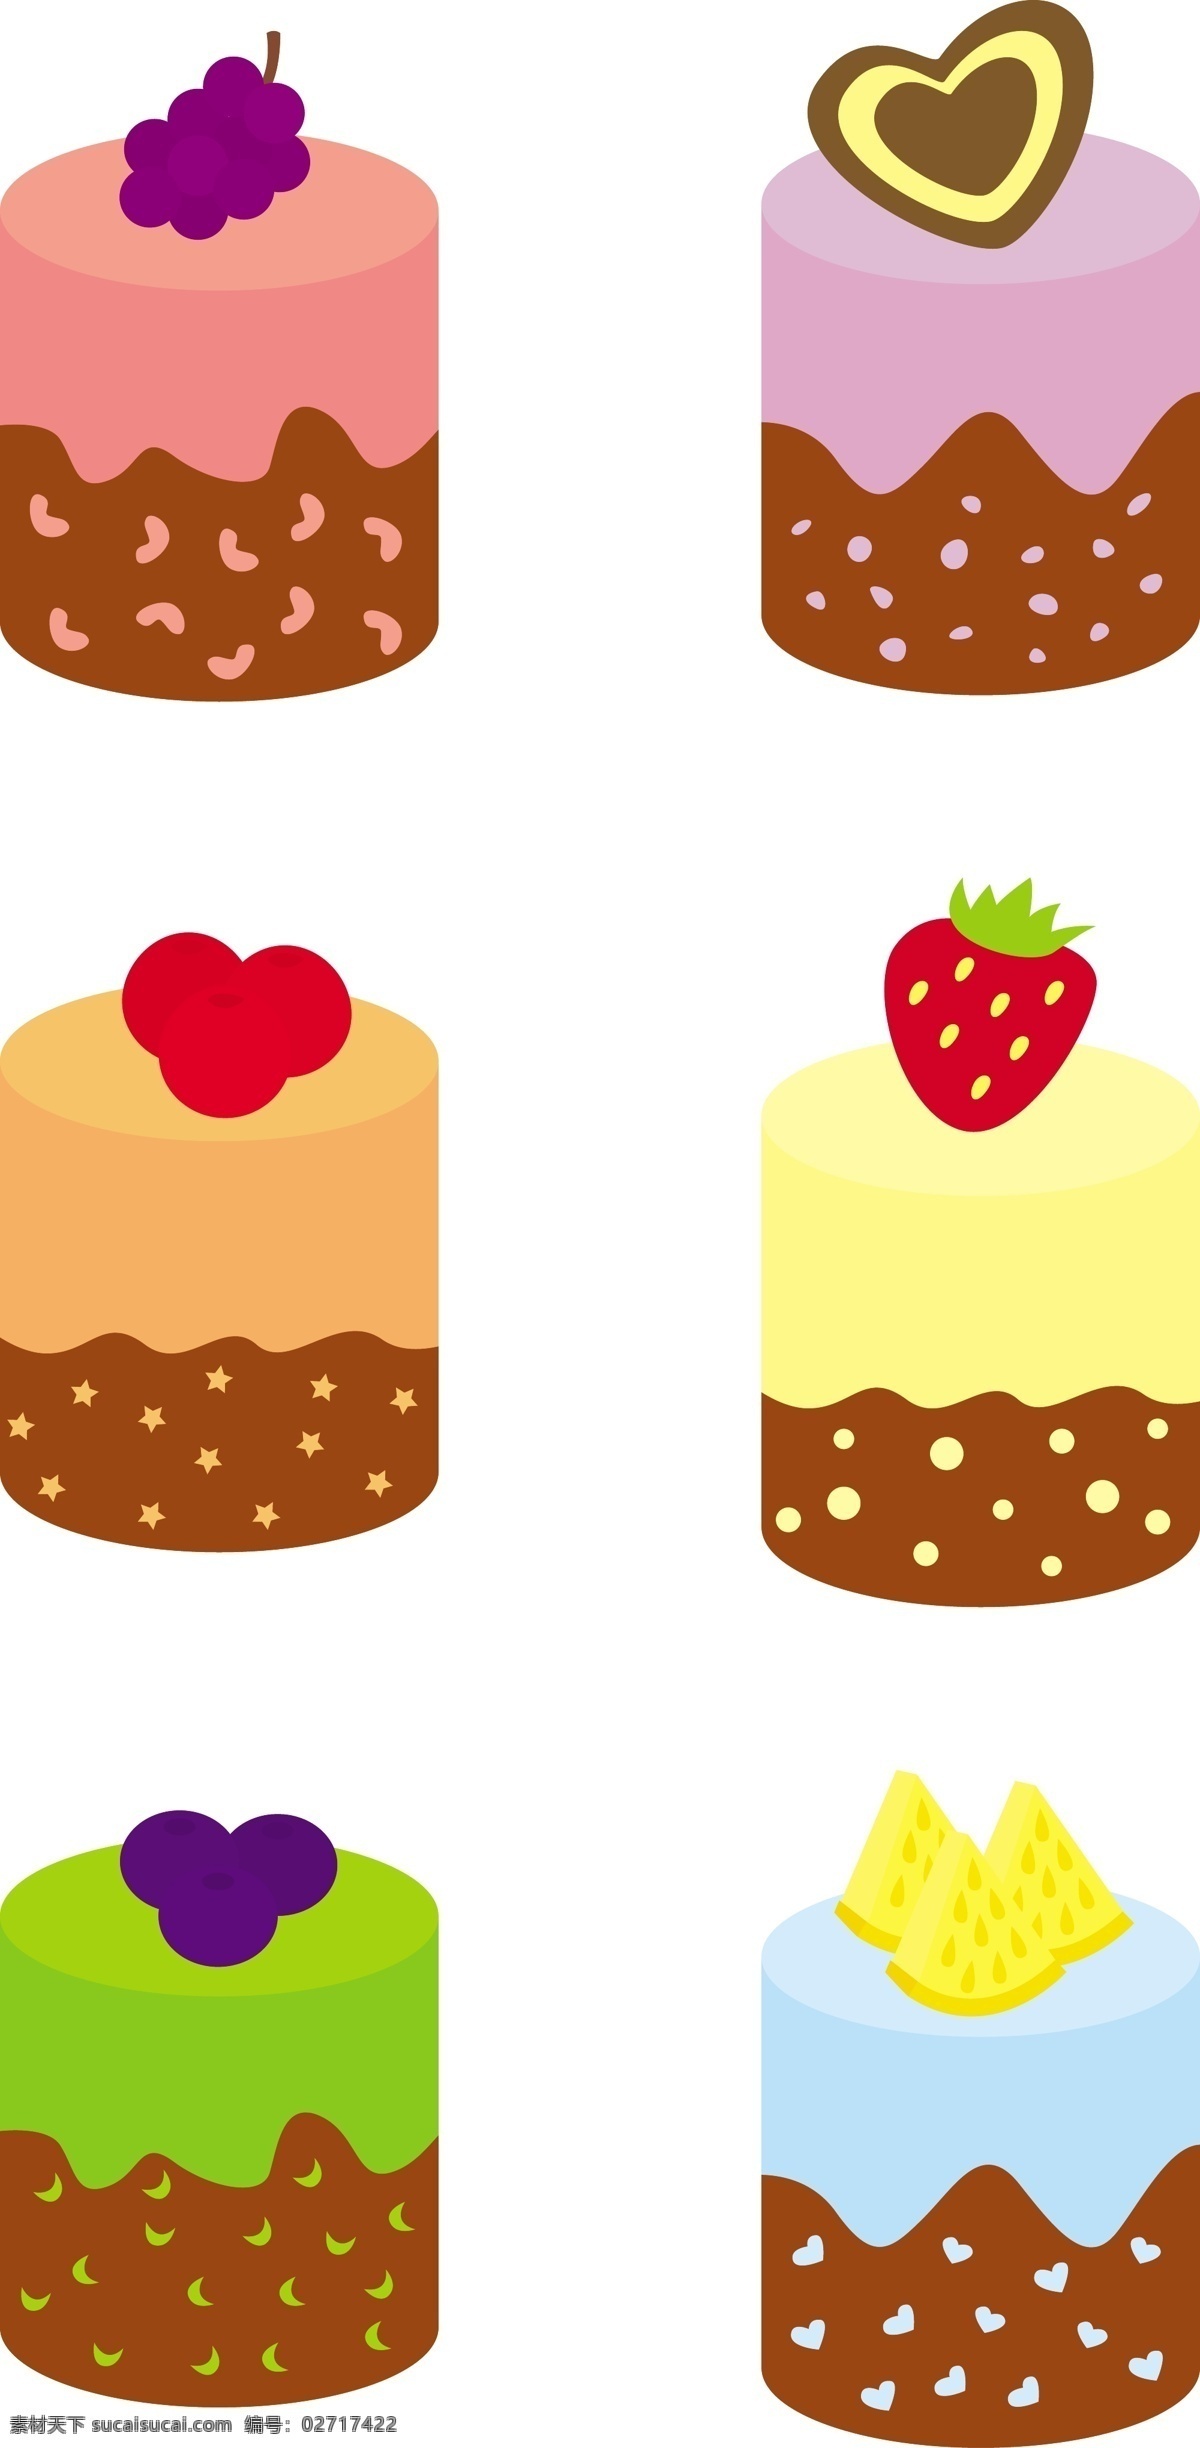 卡通 矢量 水果 蛋糕 卡通矢量 水果蛋糕 草莓蛋糕 巧克力蛋糕 布丁 甜点 甜品 食物 美食 野餐 手绘